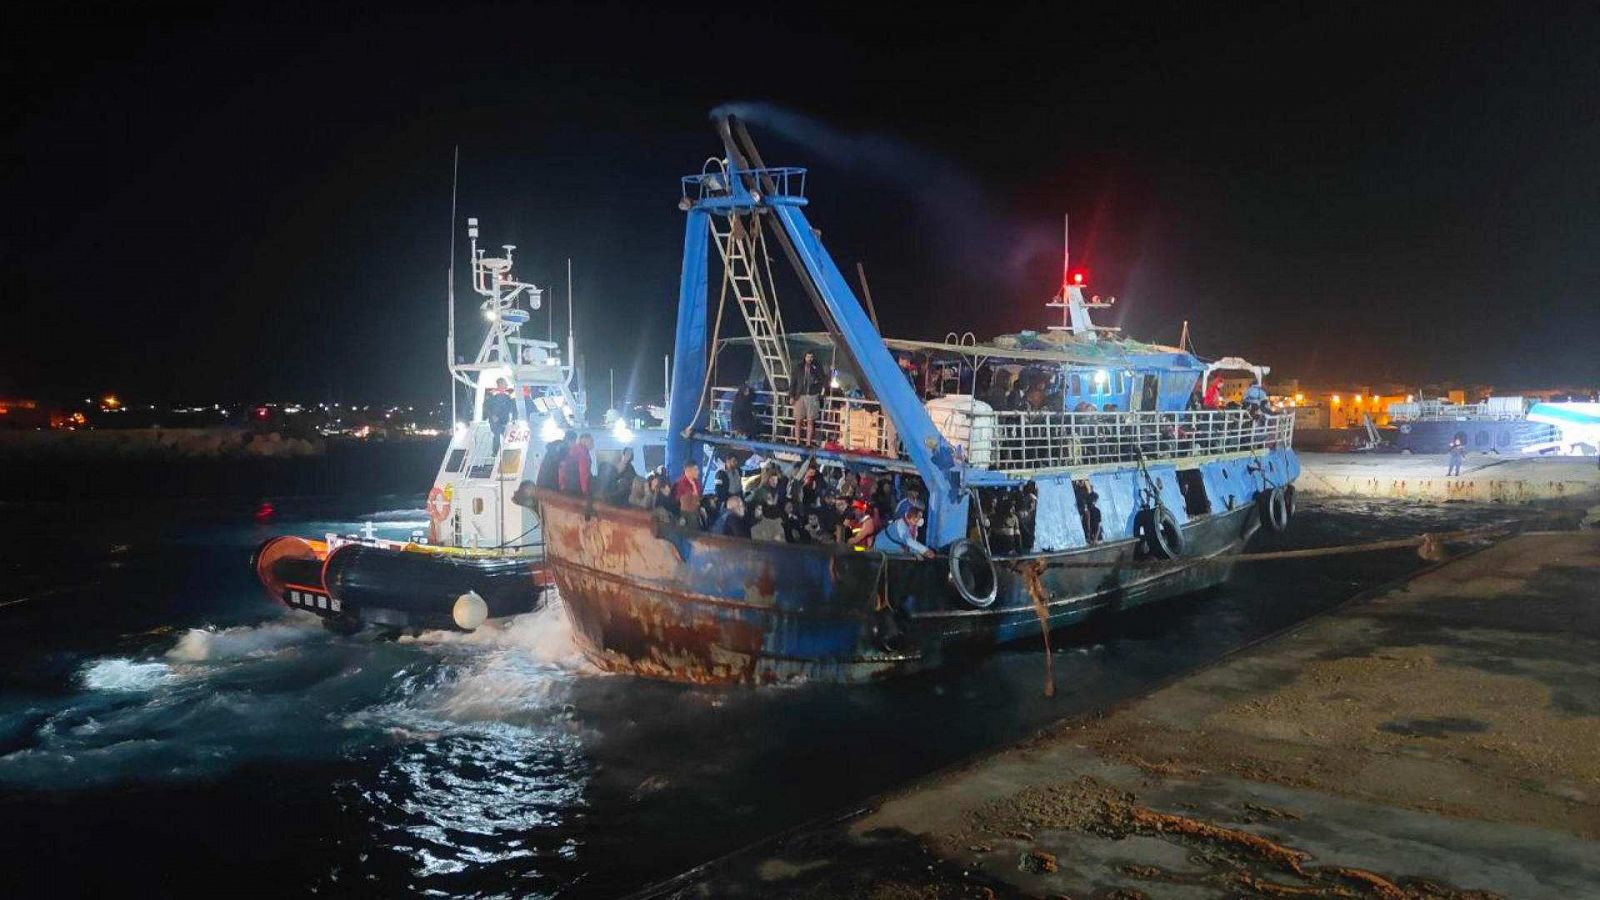 Un barco pesquero con unos 400 migrantes llega a Lampedusa, tras un naufragio que ha dejado ocho desaparecidos y una niña muerta.